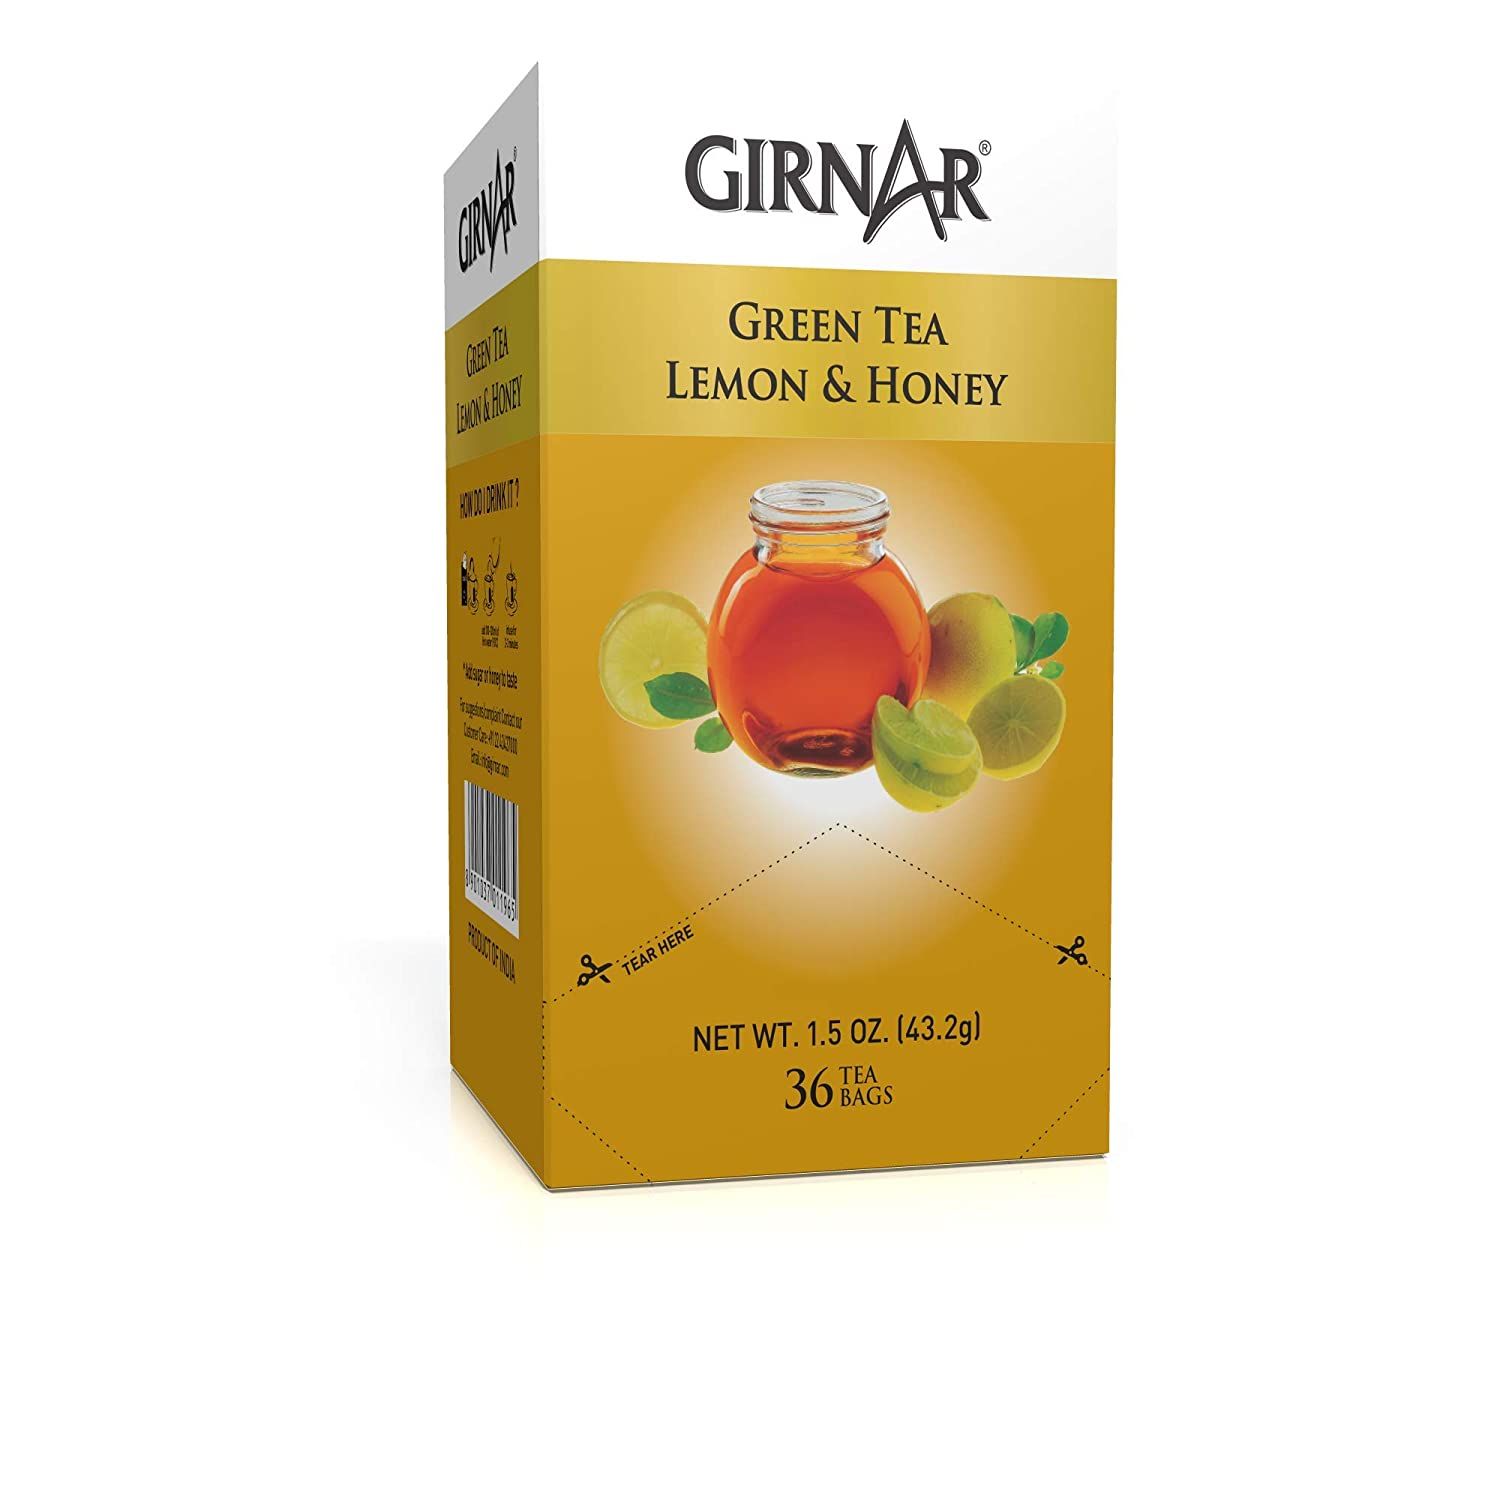 Girnar Green Tea Lemon & Honey Image